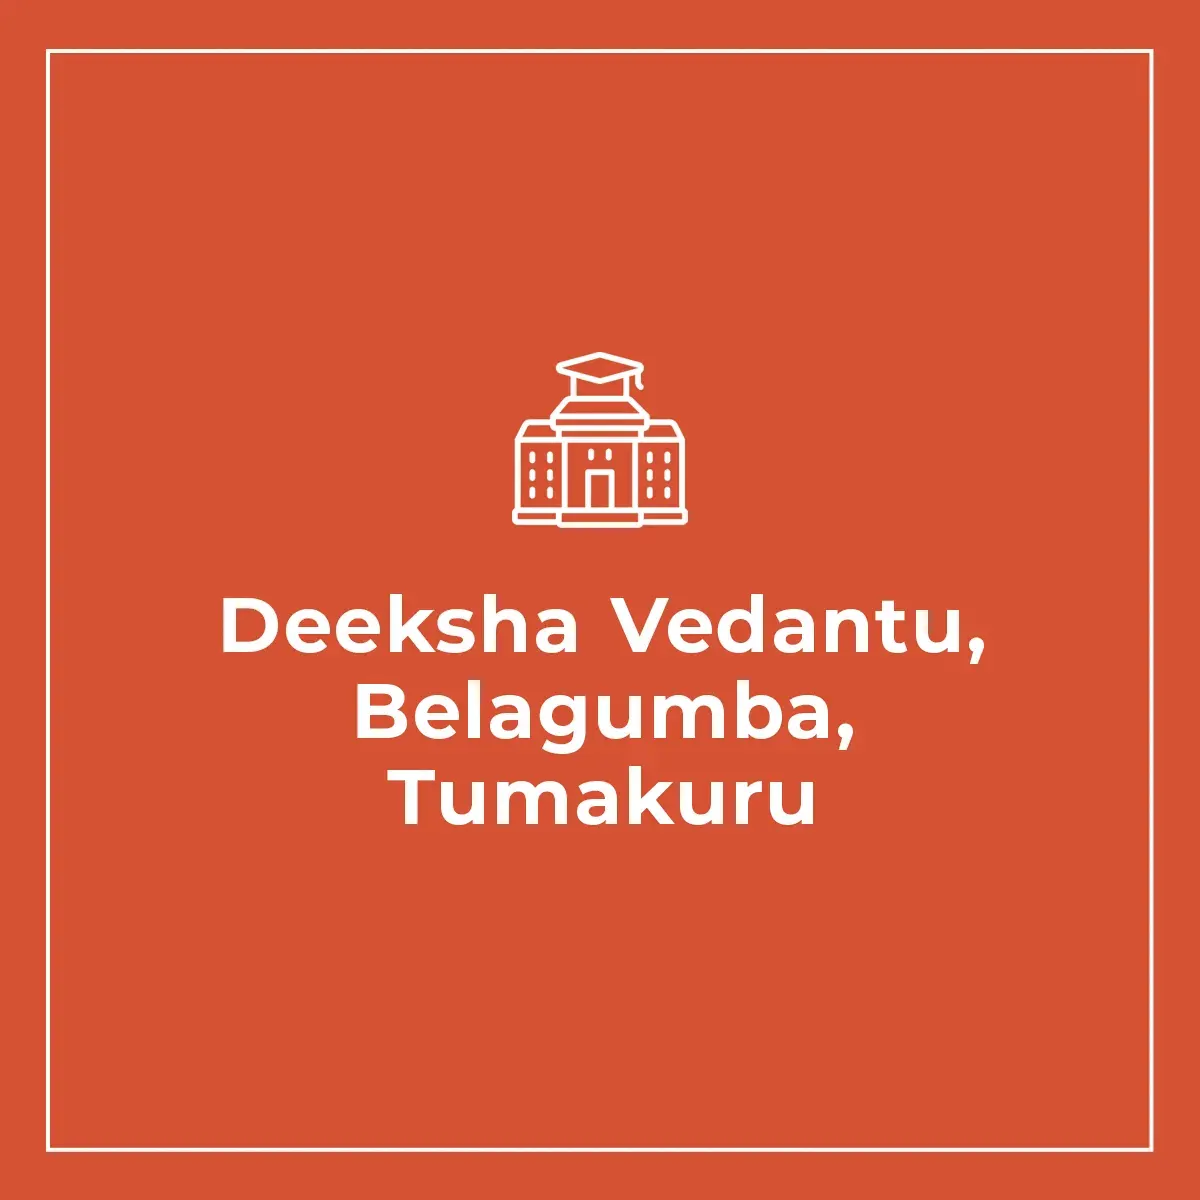 Deeksha Vedantu, Belagumba, Tumakuru